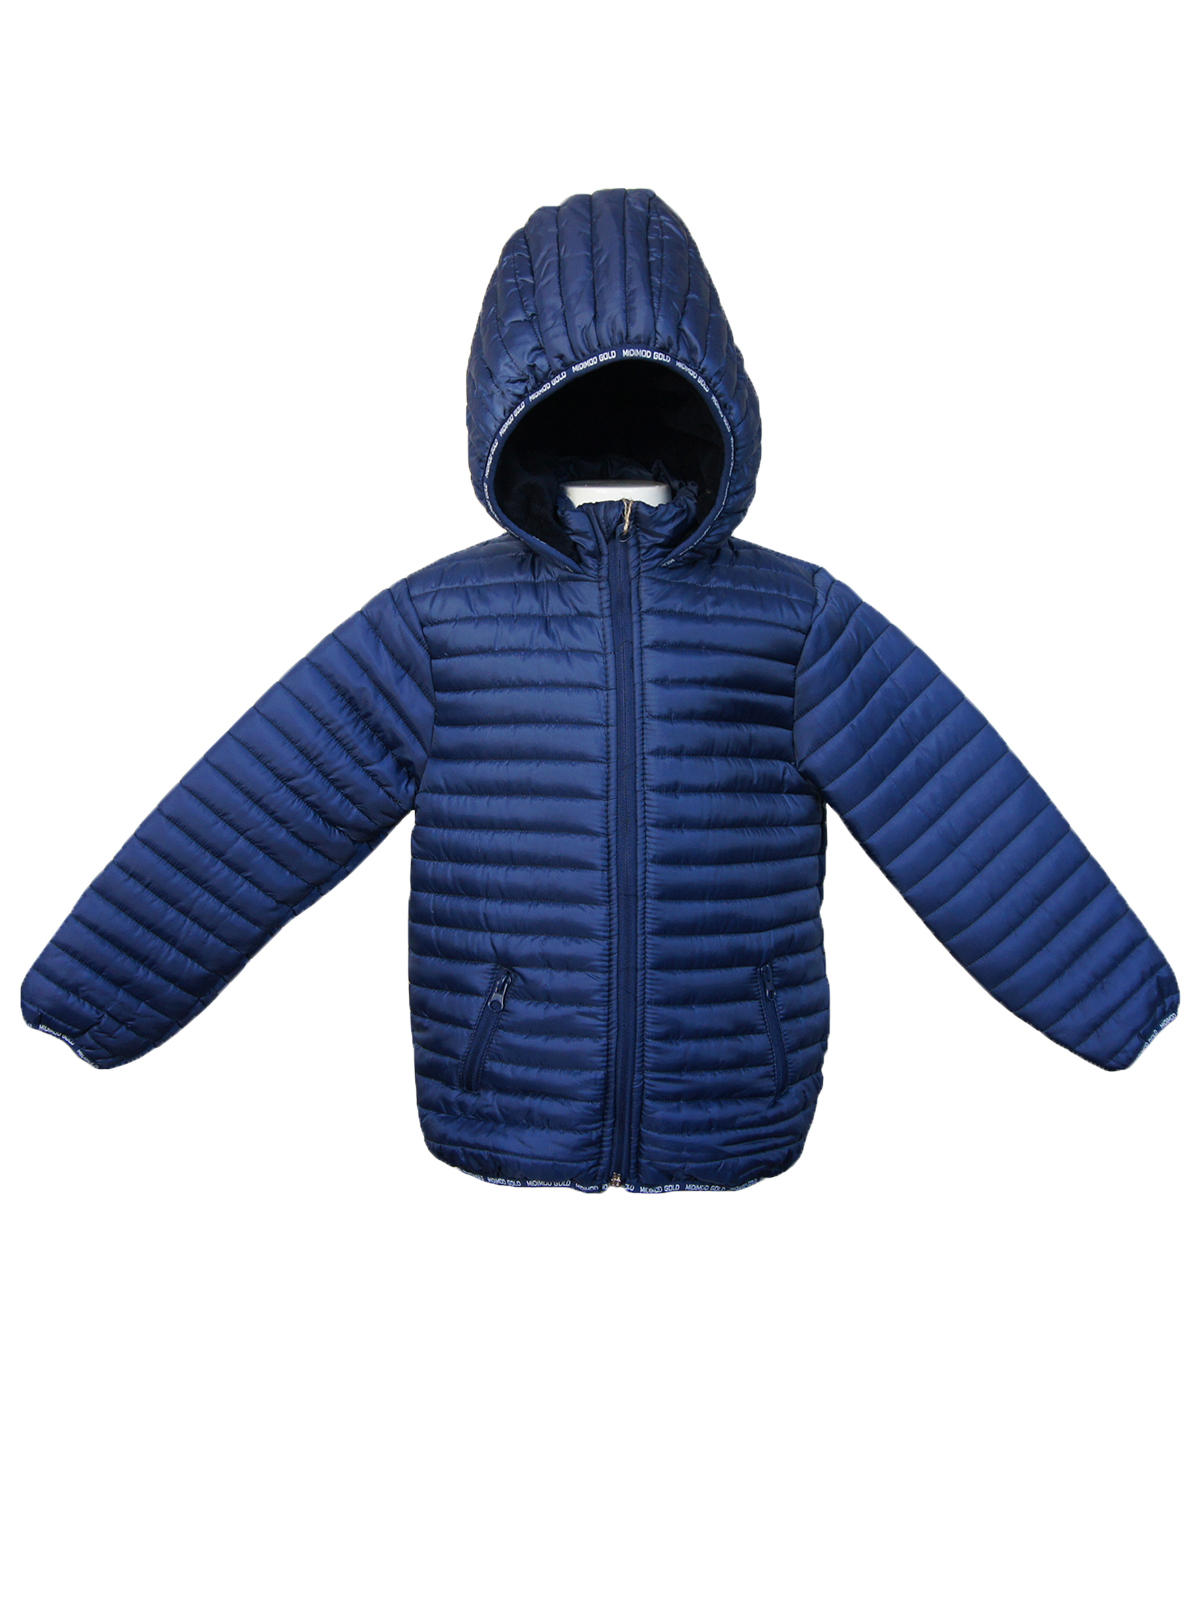 Куртка детская MDM MIDIMOD GOLD М20849, темно-синий, 122